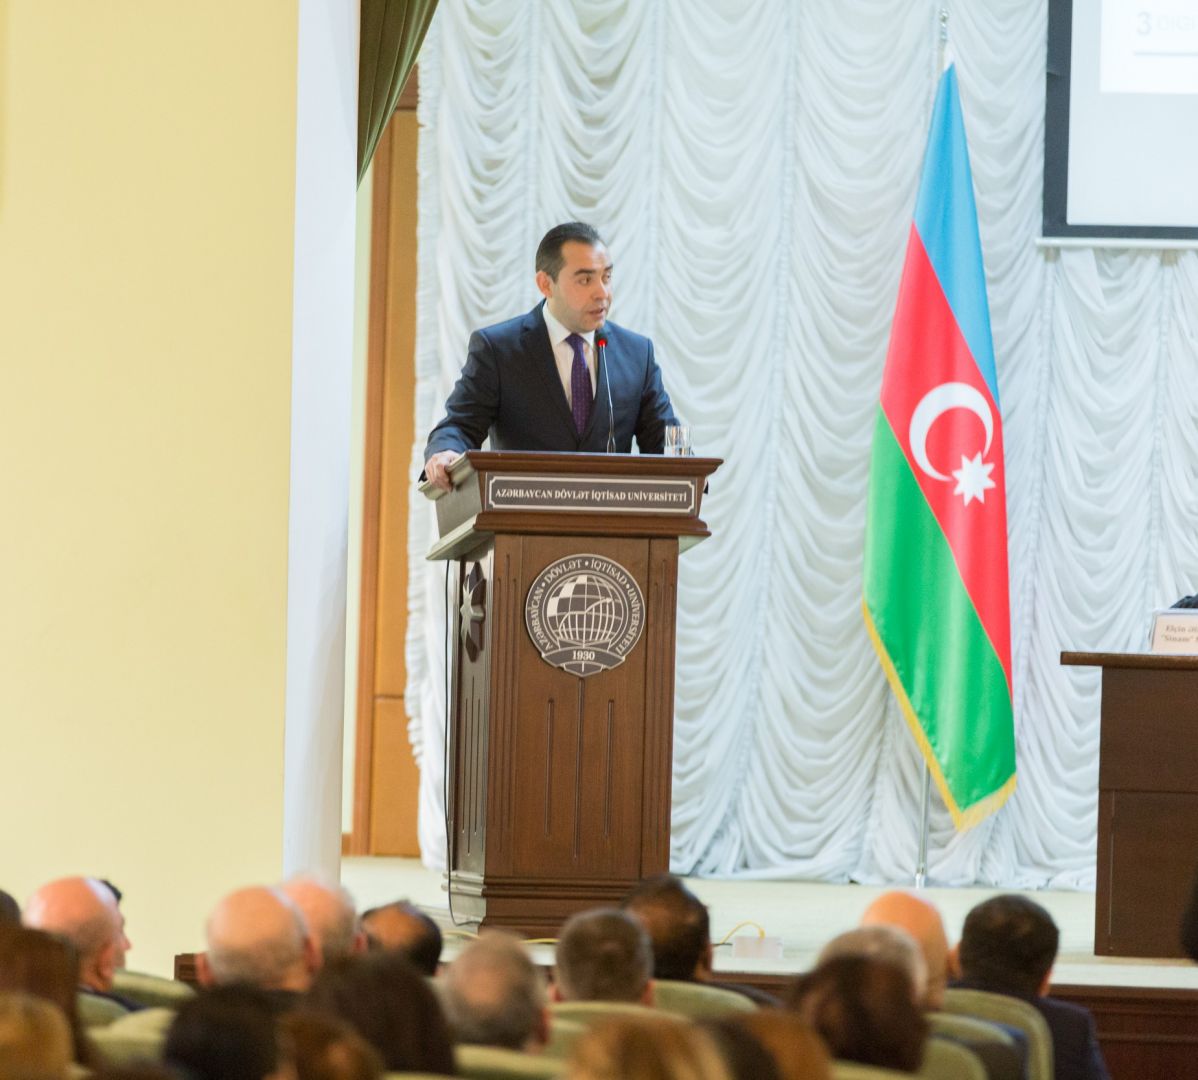 Программа “Azerbaijan Digital Hub” была представлена в рамках международной конференции (ФОТО)